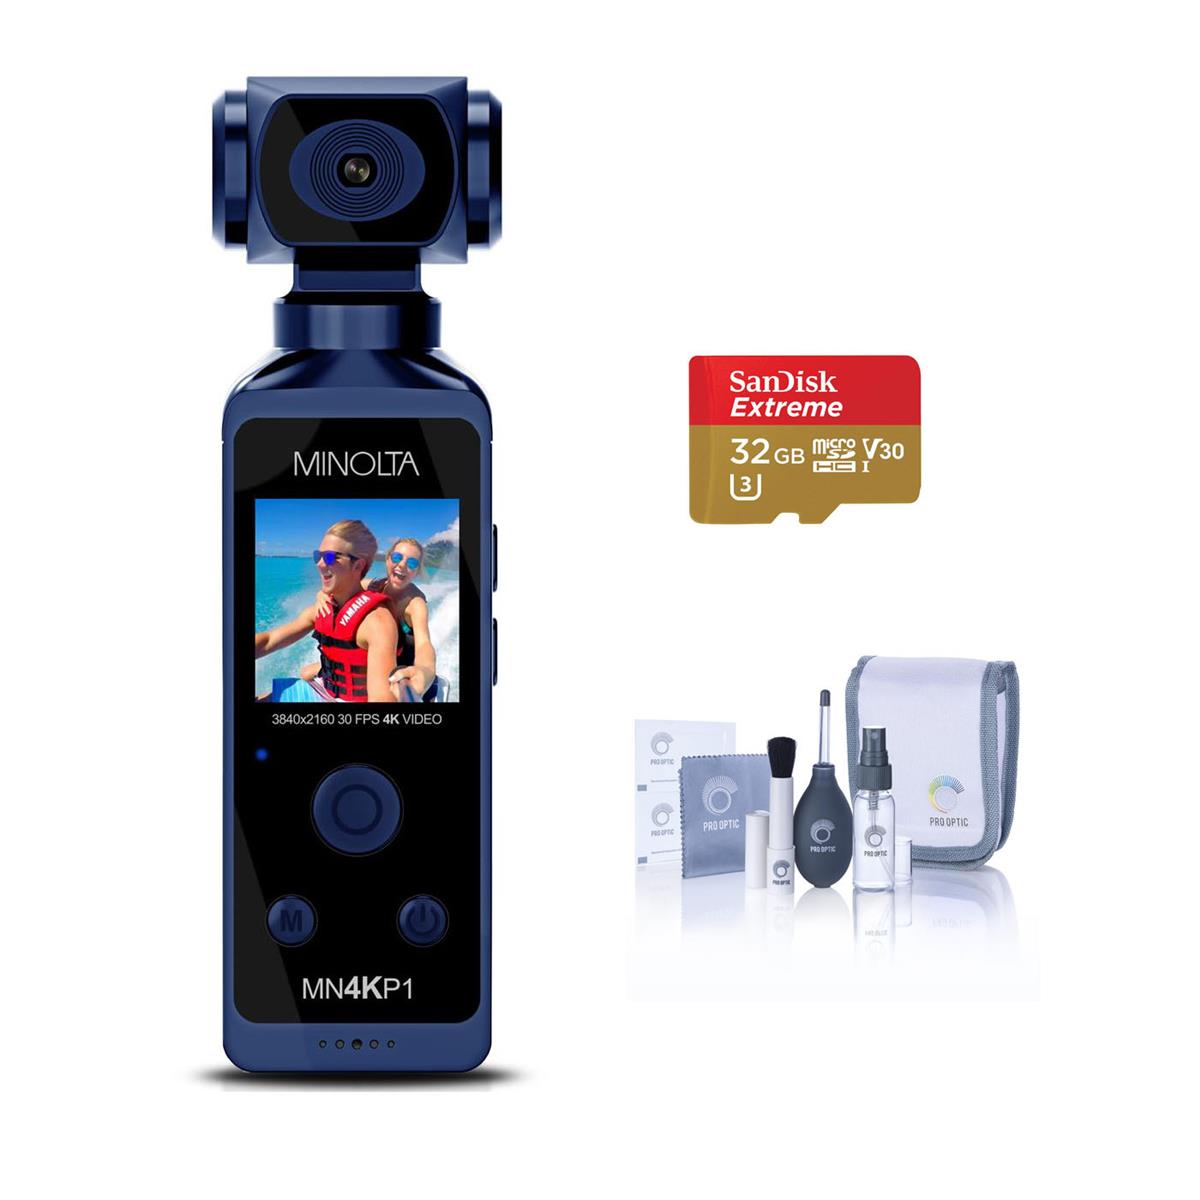 Minolta MN4KP1 4K Ultra HD Wi-Fi Pocket Camcorder, Blue with Accessory Kit -  MN4KP1-BL FA